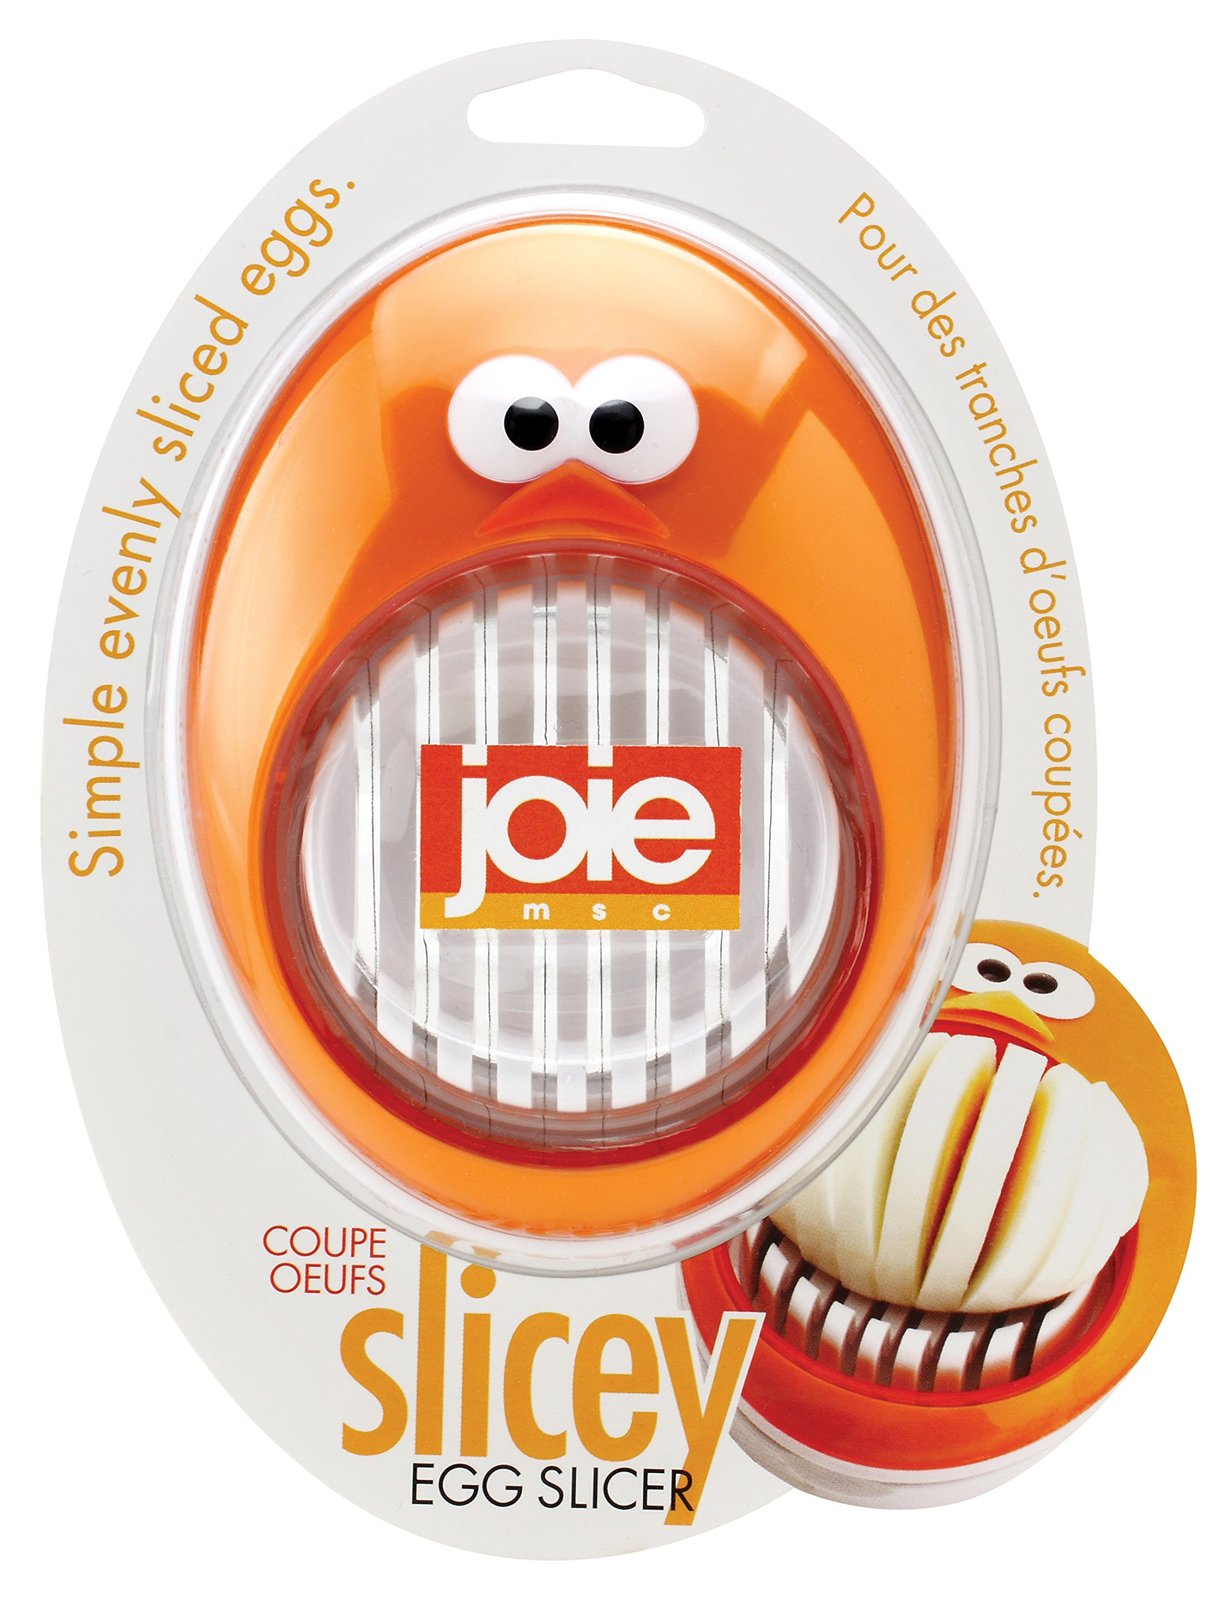 Primary image for Joie MSC Egg Slicer, Plastic, Orange